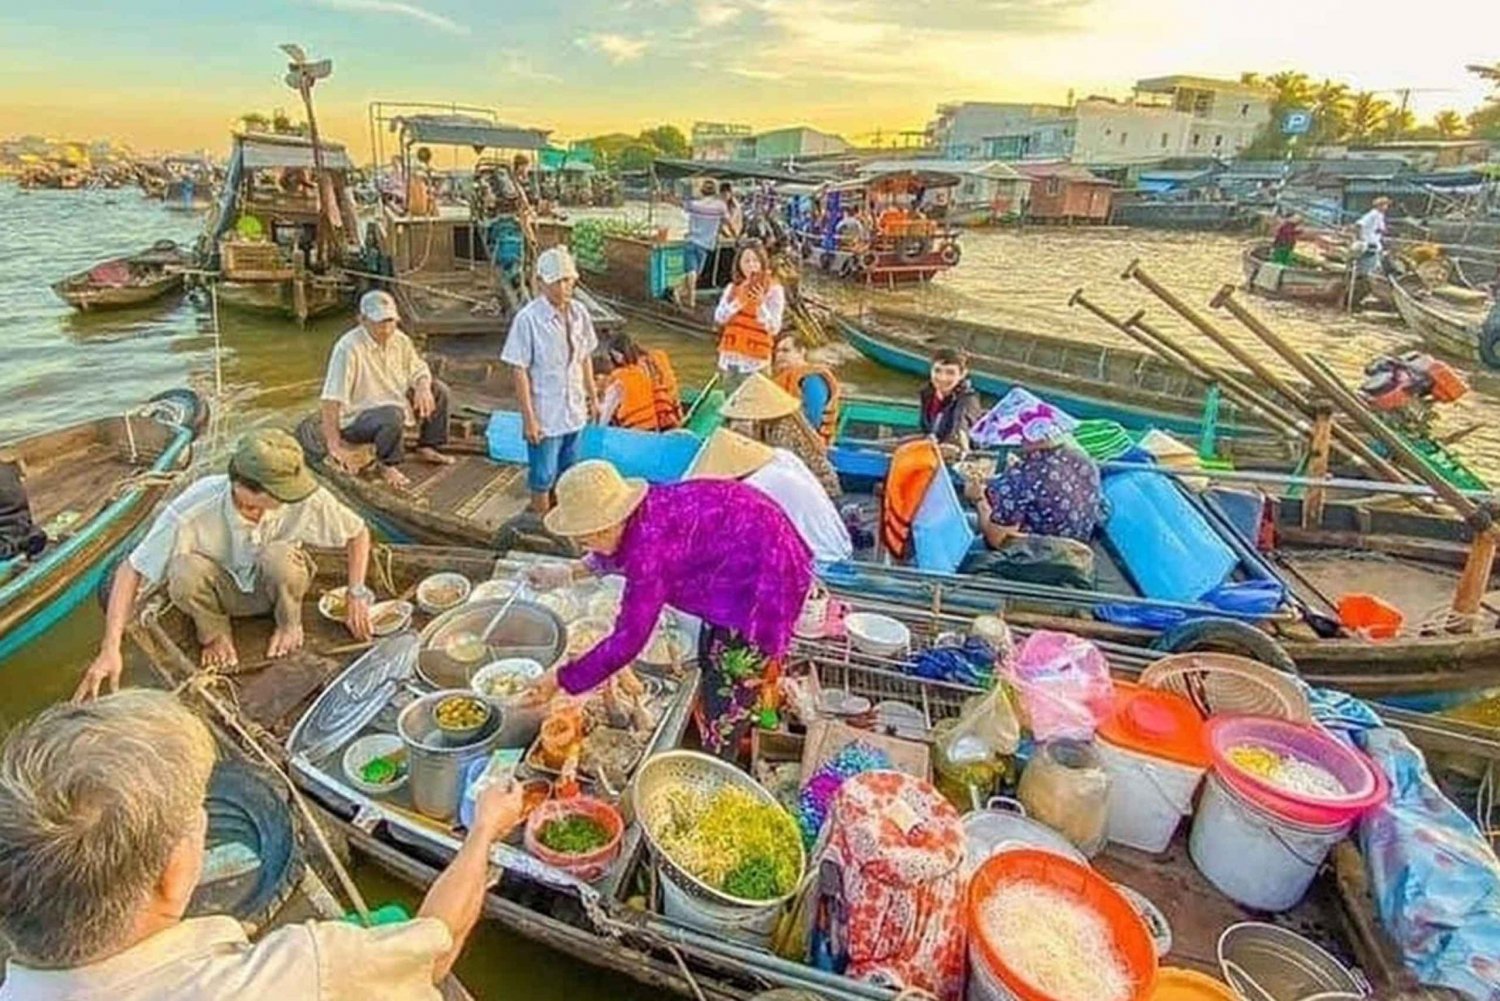 MeKong Delta 2days- Cai Rang Floating Market